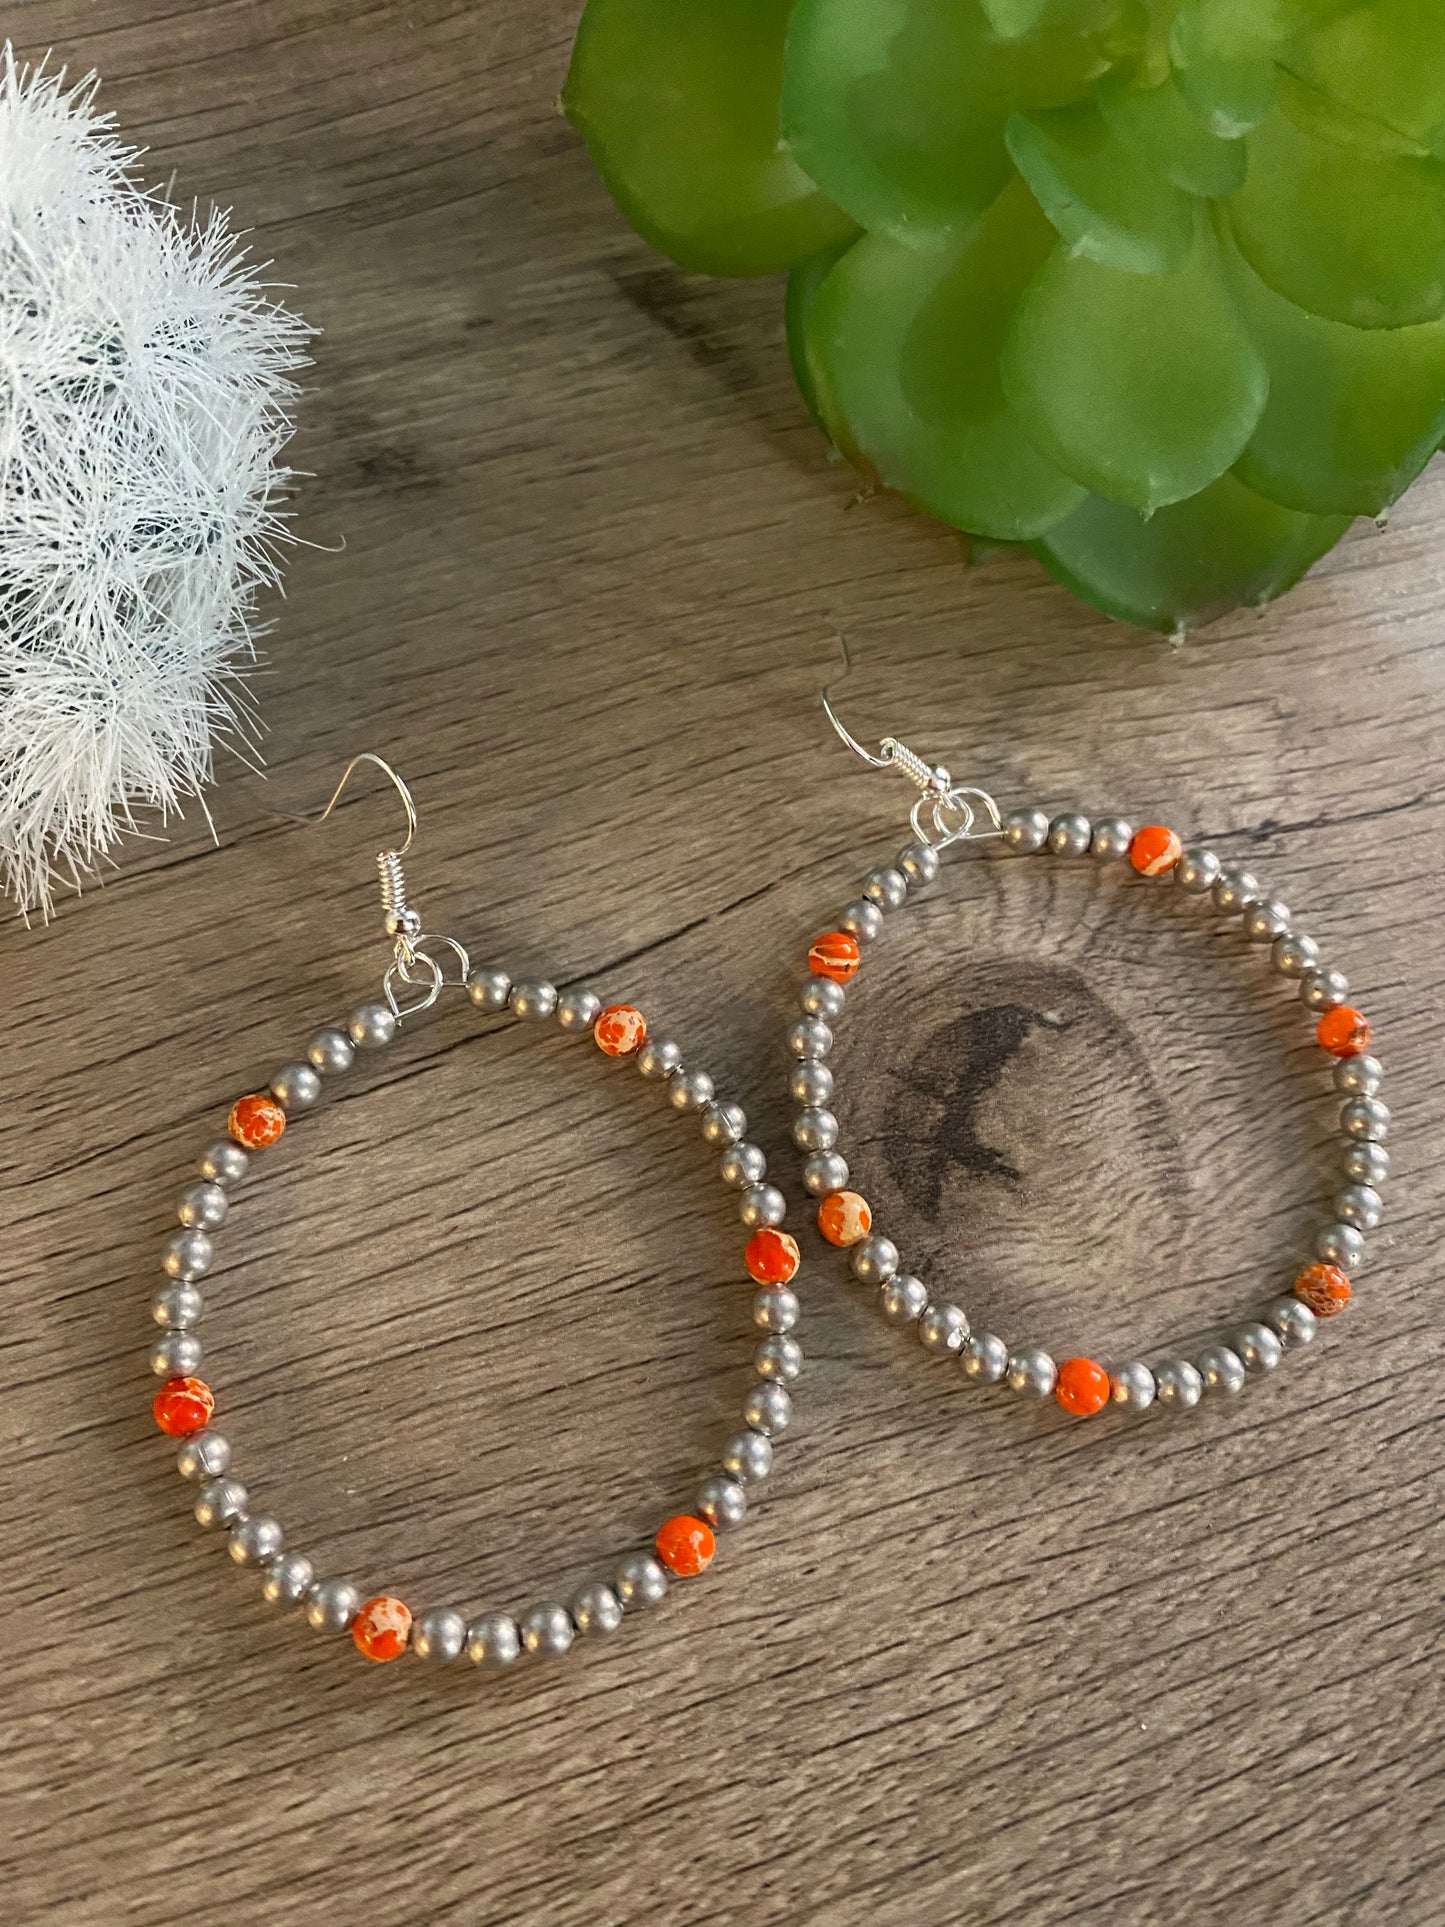 Silver plated hoop earrings - a little bit of orange